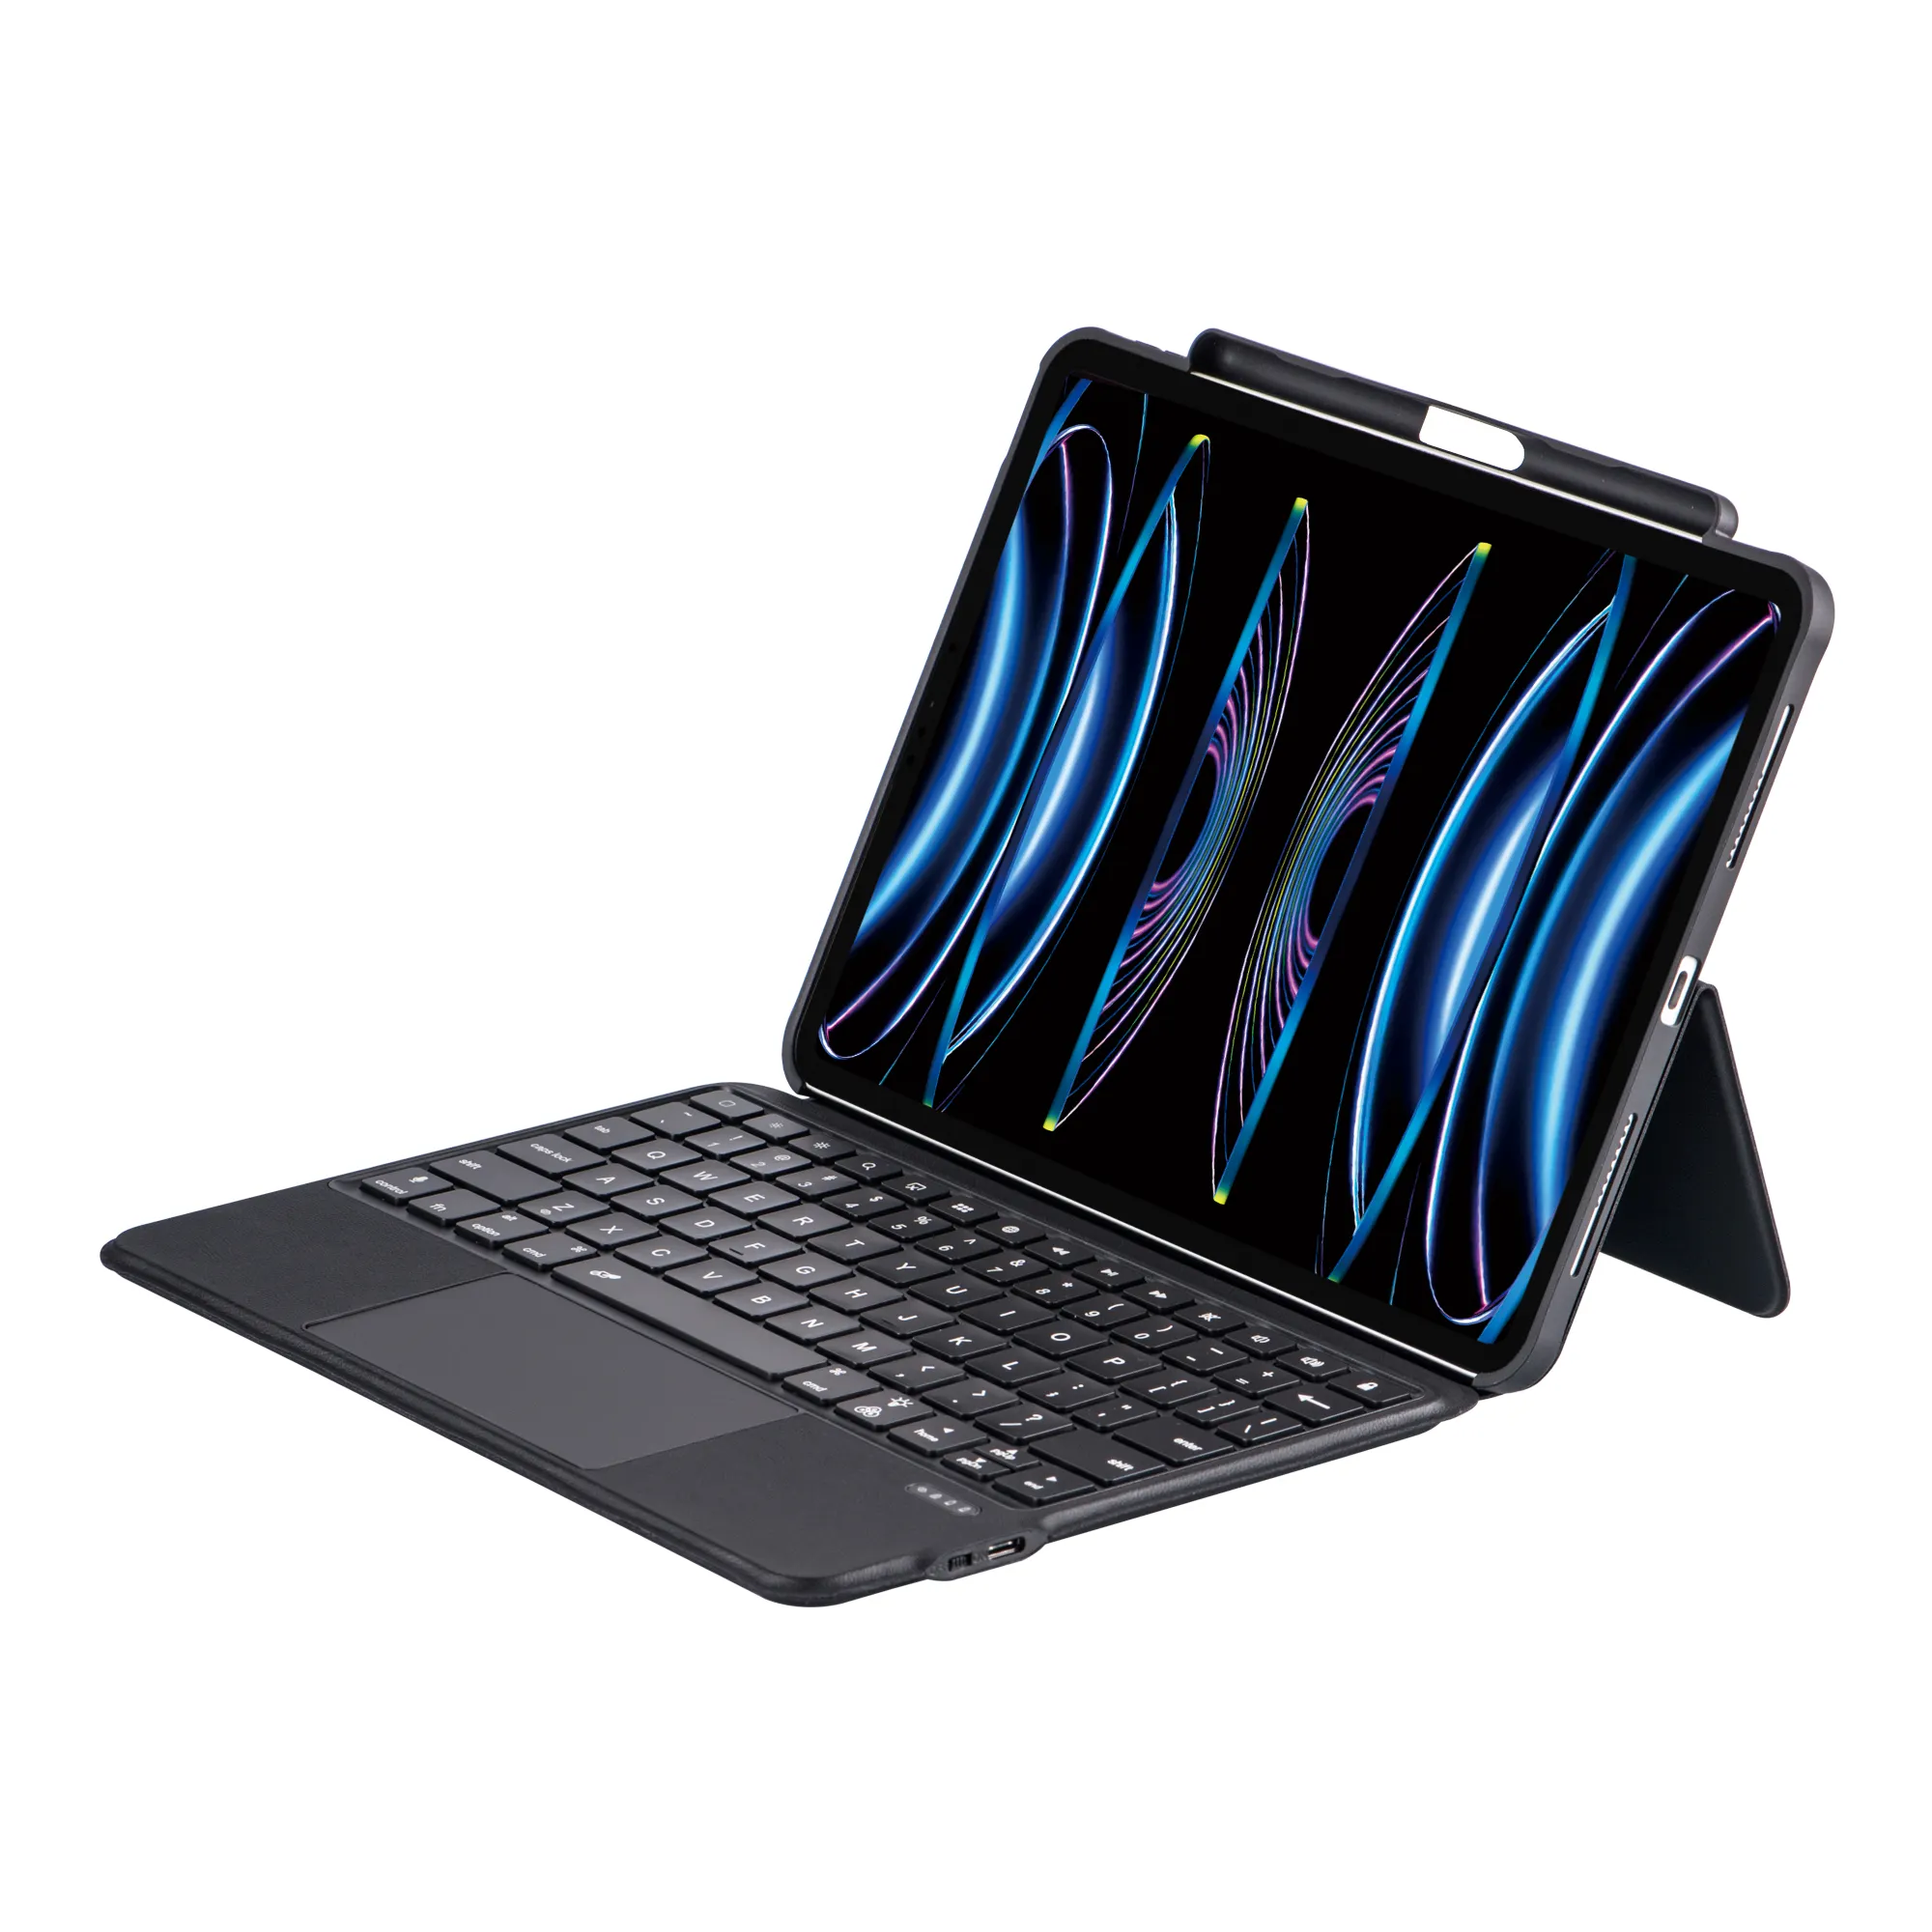 आईपैड के लिए वायरलेस कीबोर्ड बैकलाइट टचपैड कीबोर्ड केस 10.2 इंच आईपैड 2021 9वीं और 8वीं और 7वीं पीढ़ी के एयर 3 प्रो 10.5'' के लिए